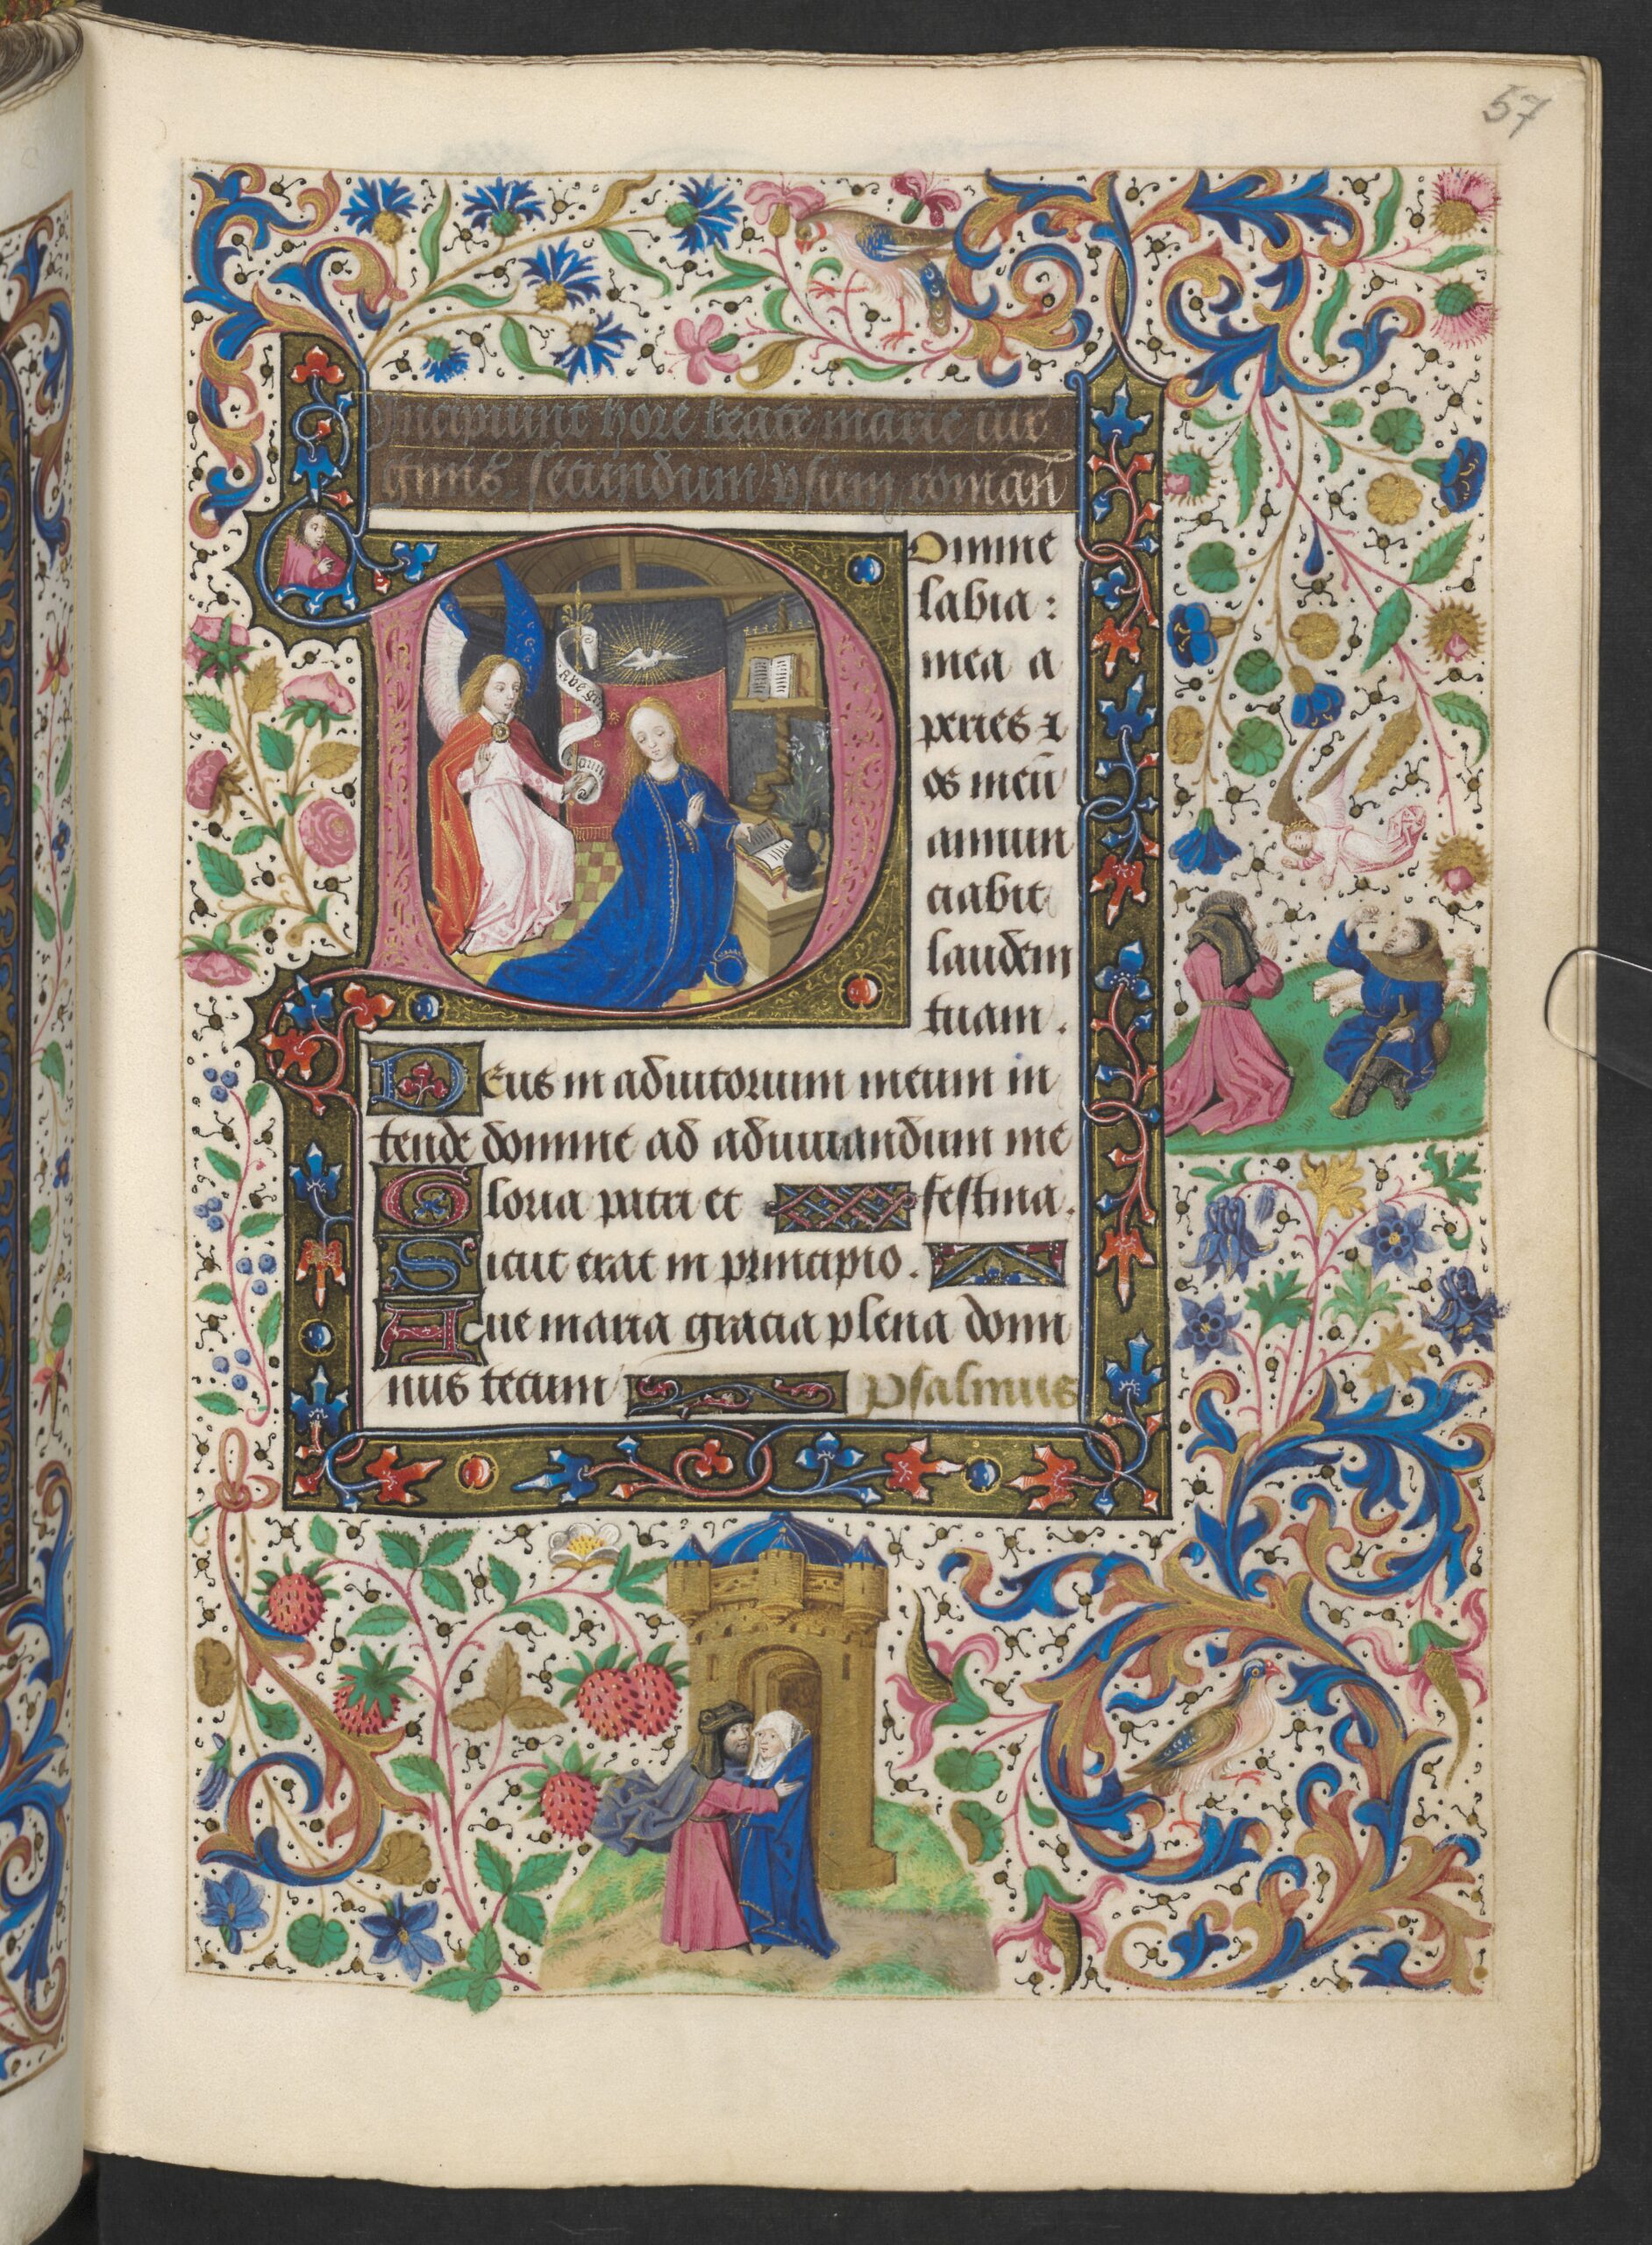 1477 Maitre viennois de Marie de Bourgogne Heures de Marie de Bourgogne ONL Codex vindobonensis 1857 fol 57r